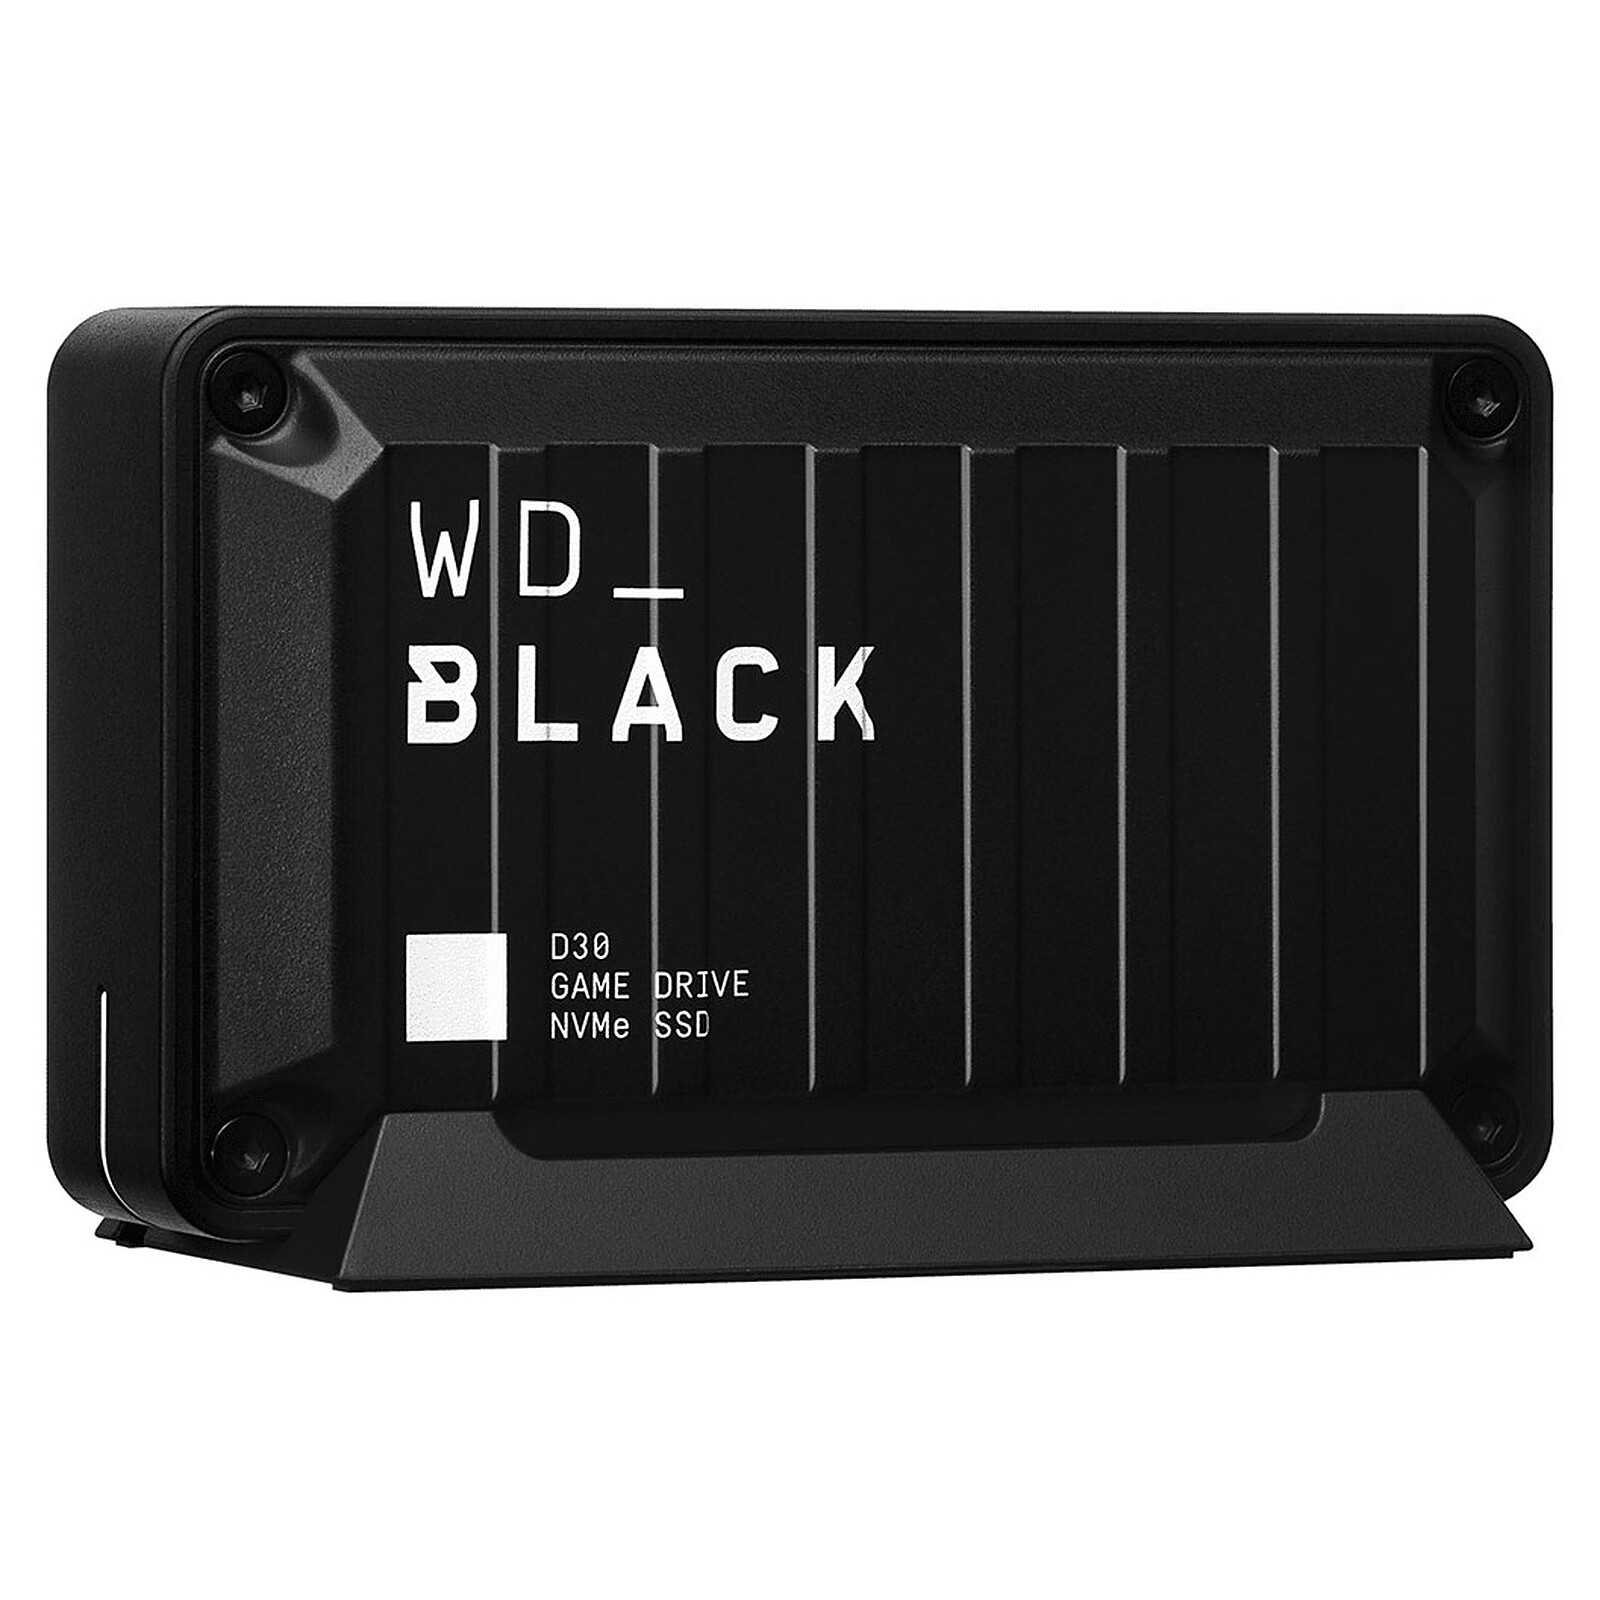 WD_Black D30 Game Drive SSD 500 Go - Disque dur externe - LDLC